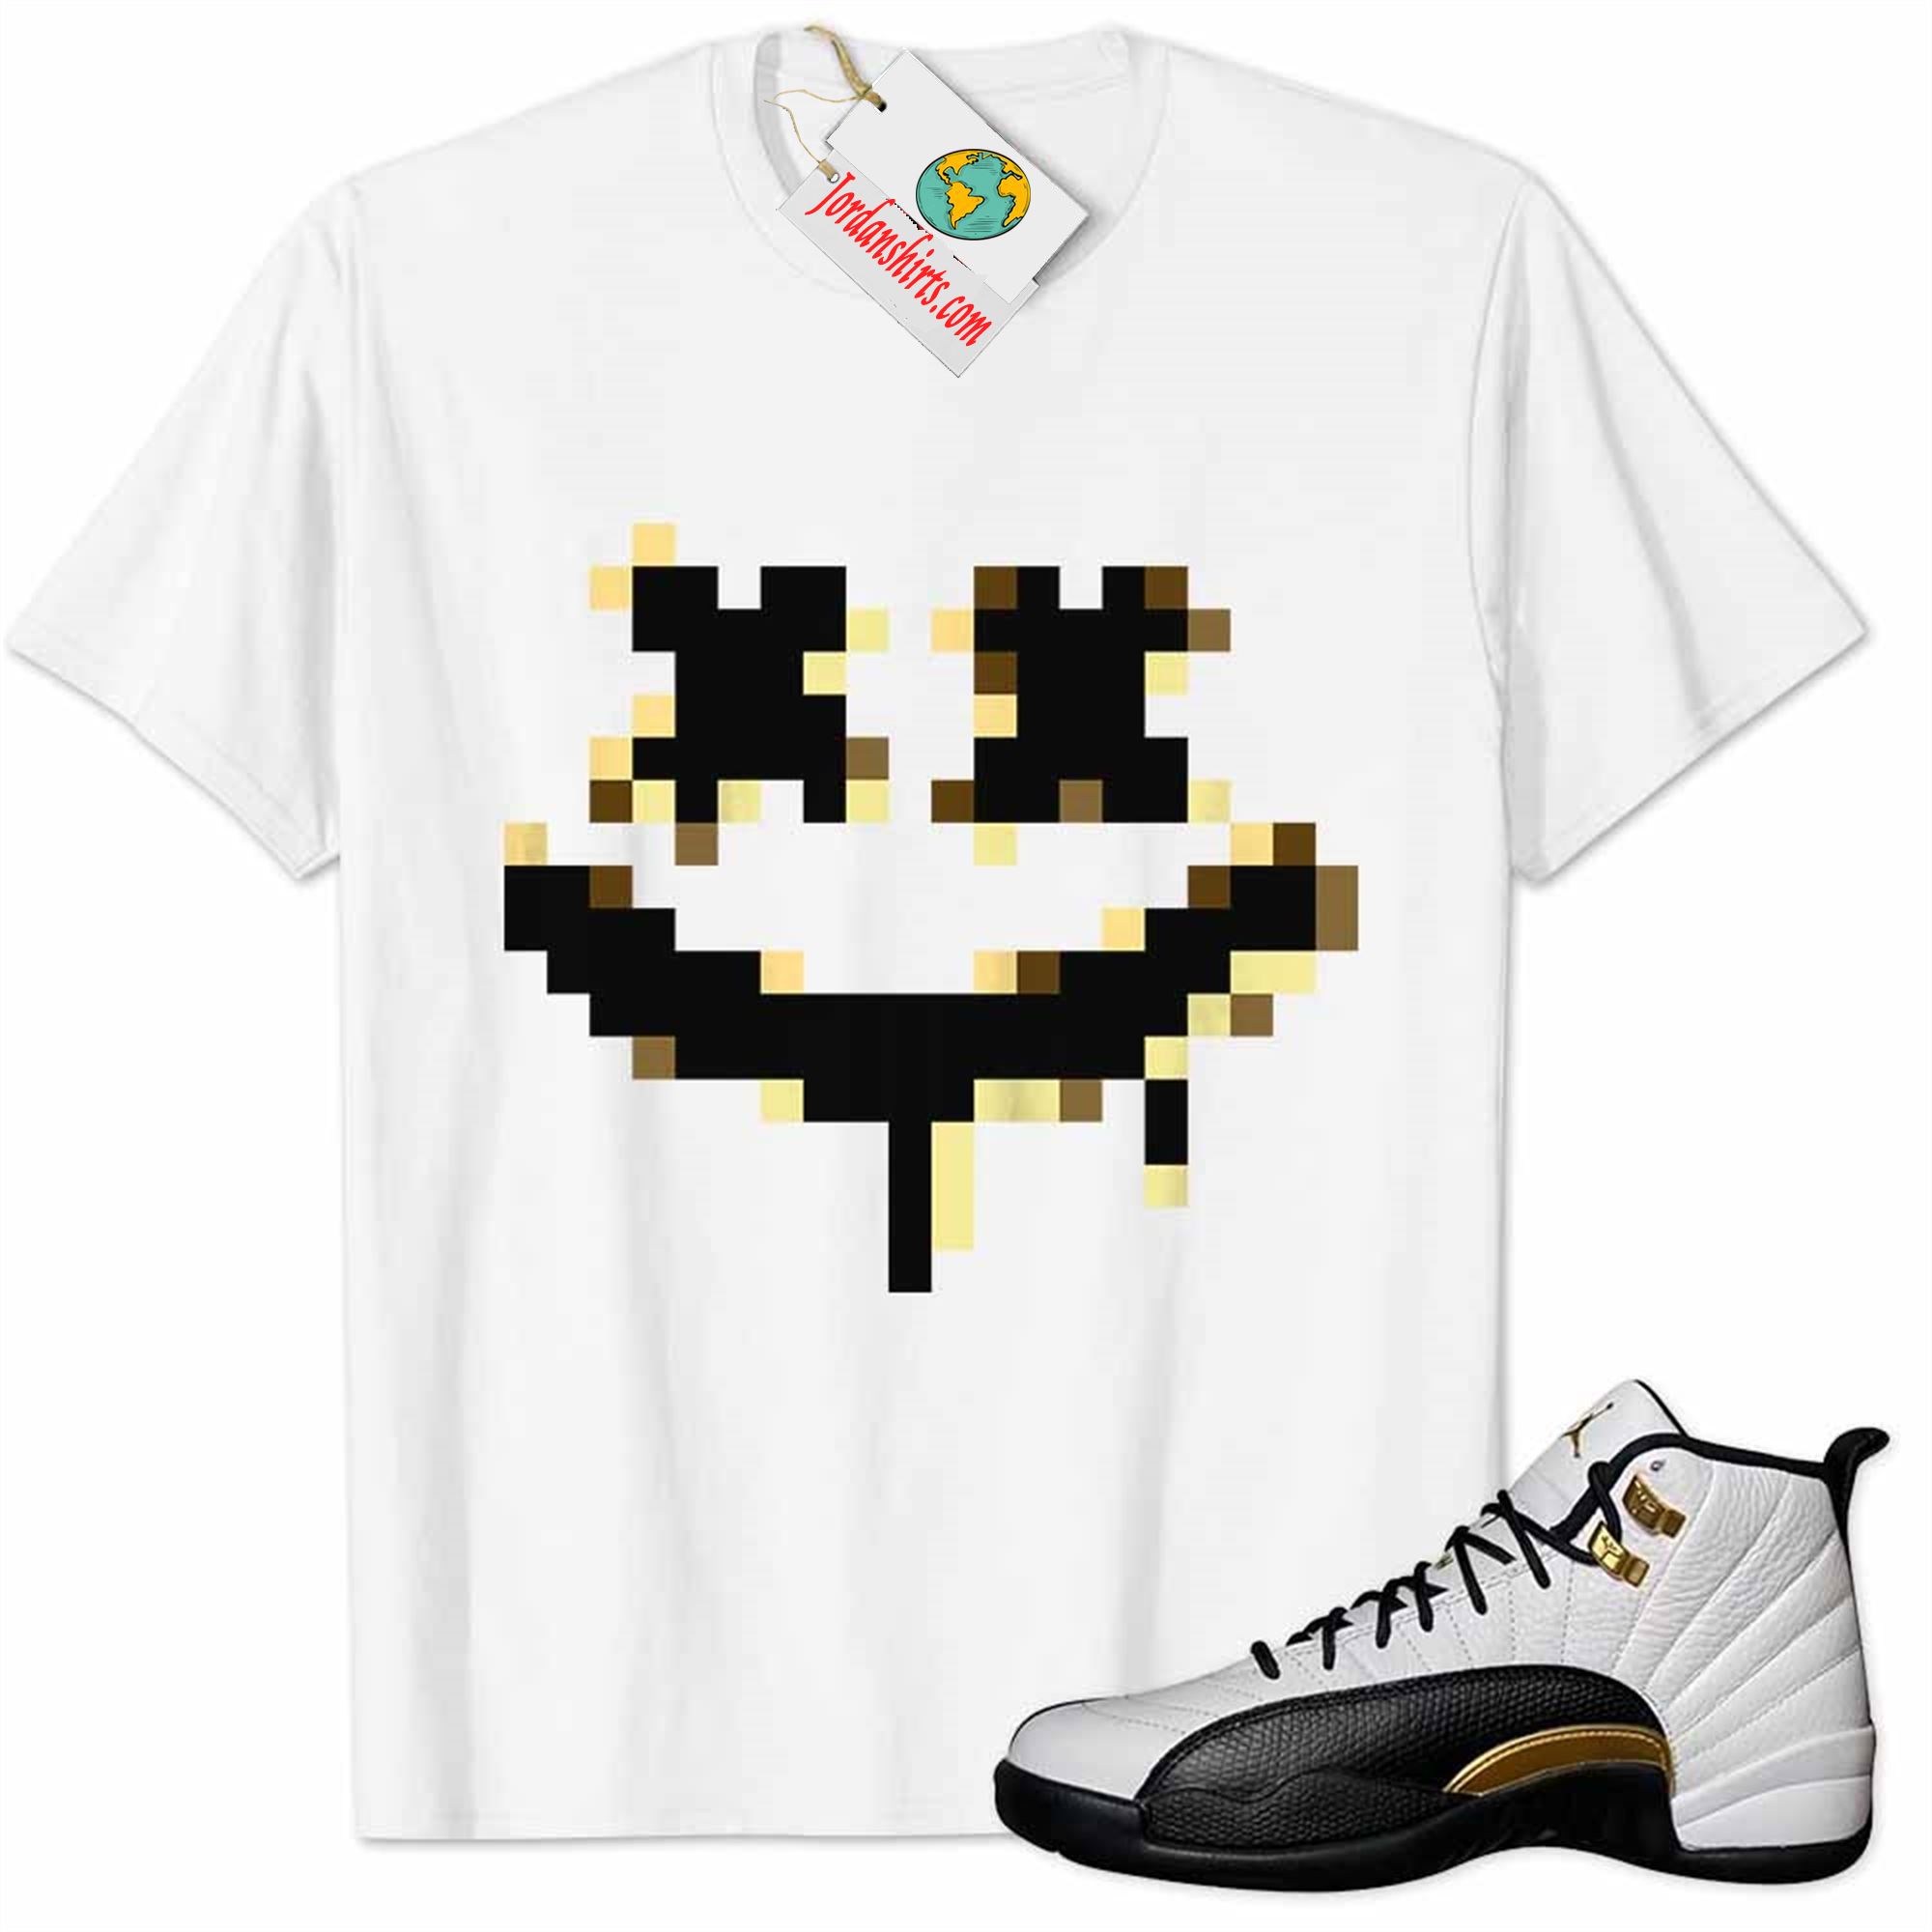 Jordan 12 Shirt, Smile Happy Face Pixel Art White Air Jordan 12 Royalty 12s Full Size Up To 5xl